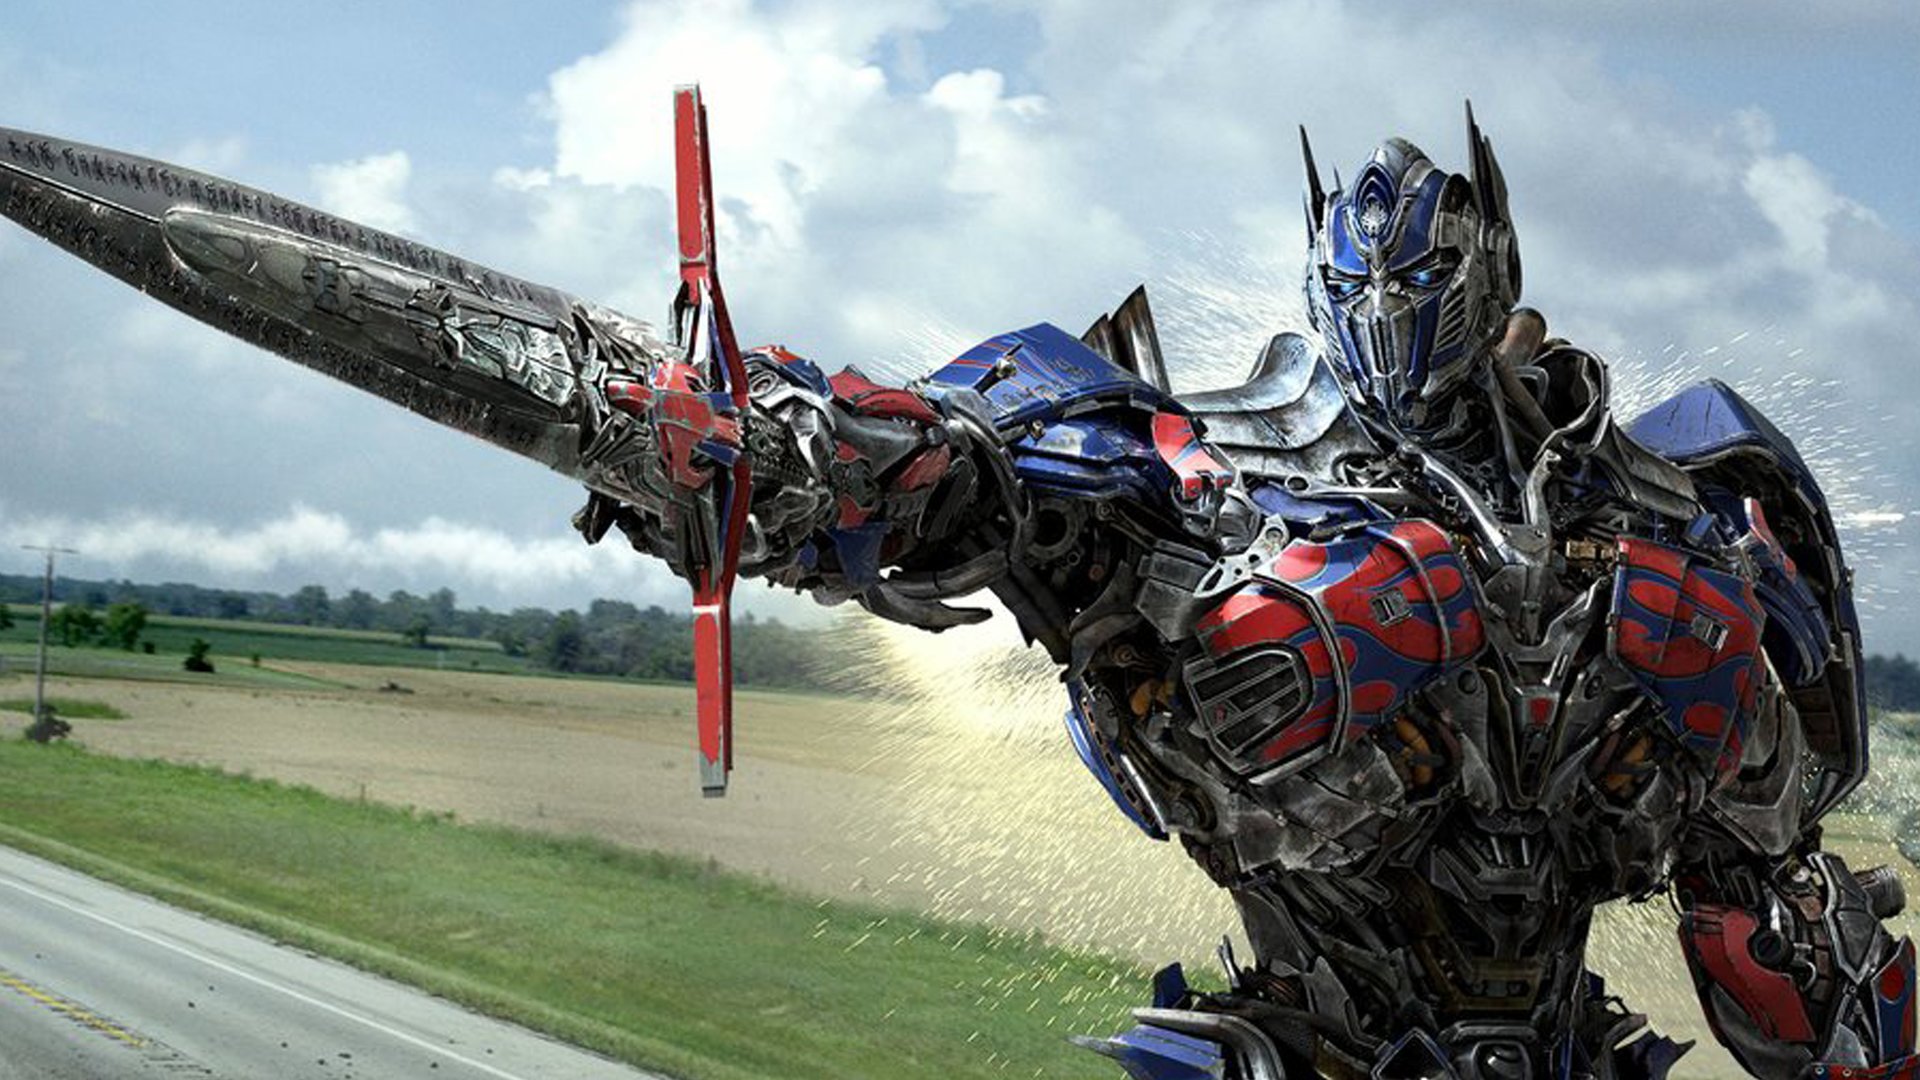 #Neuer Film ist nur der Anfang: „Transformers 7“ startet ganze Trilogie – alle Infos